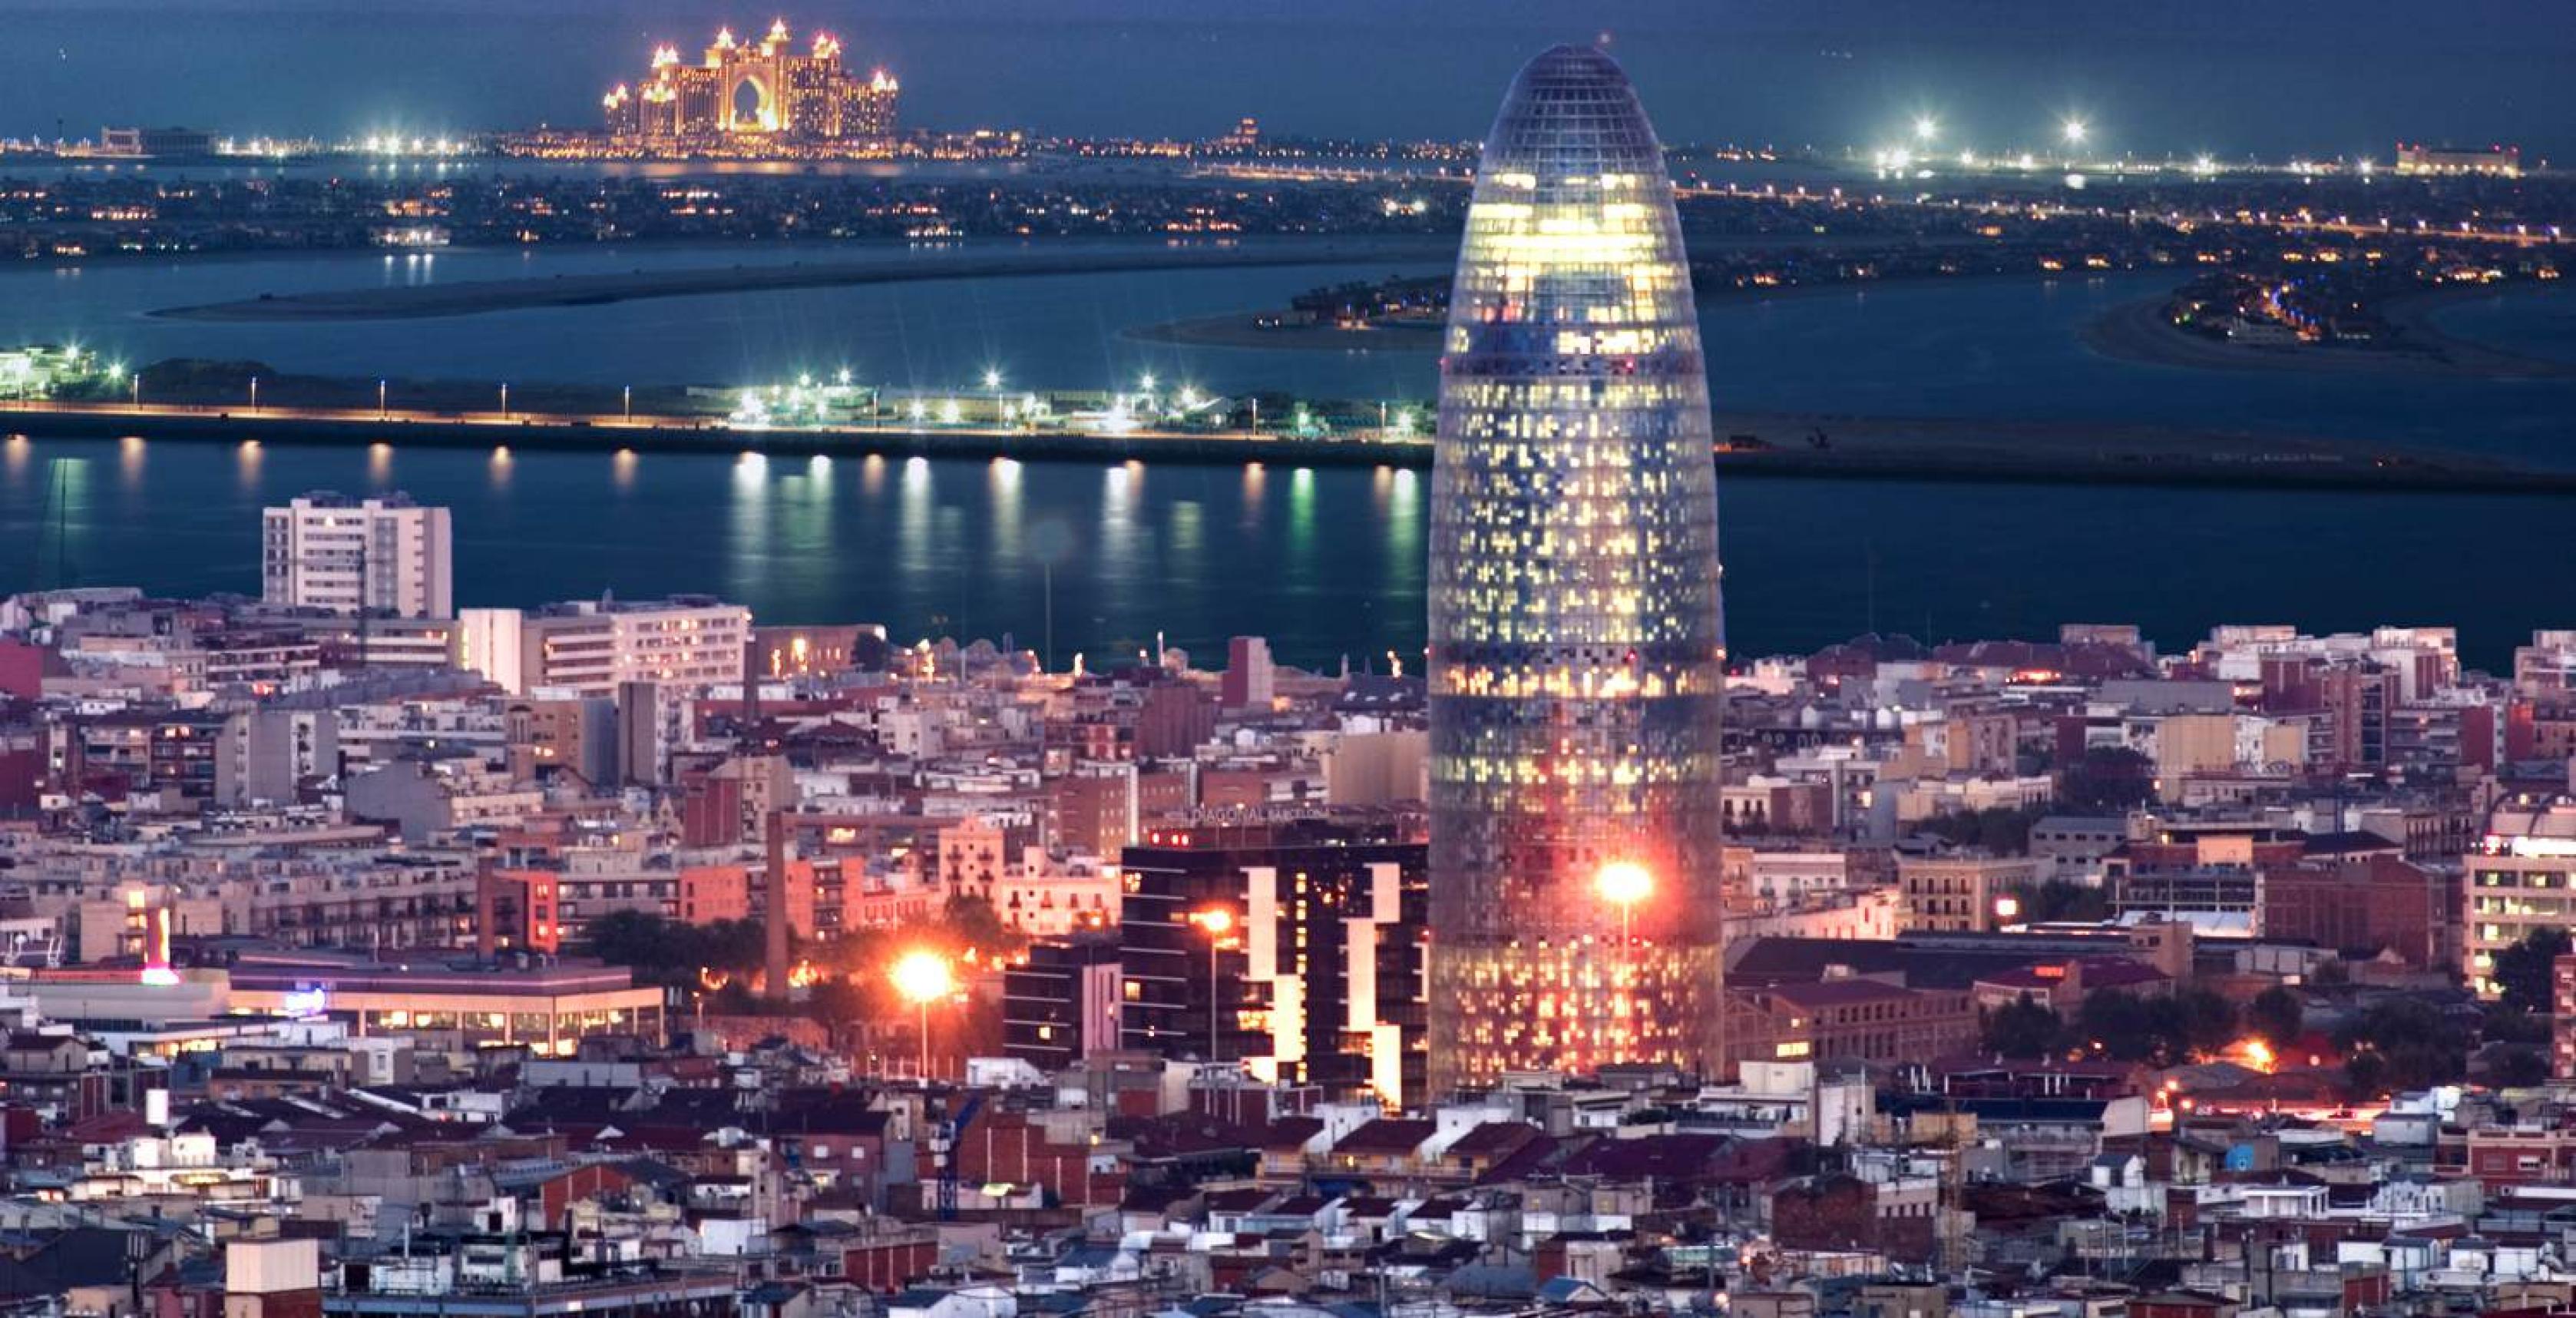 Eine Projekt-Idee des Unternehmers Karl Jacobi ist der Bau einer Insel nach dem Vorbild von Dubai vor der Küste von Barcelona, die den Namen der Stadt weithin lesbar machen soll. Hier eine Fotomontage.